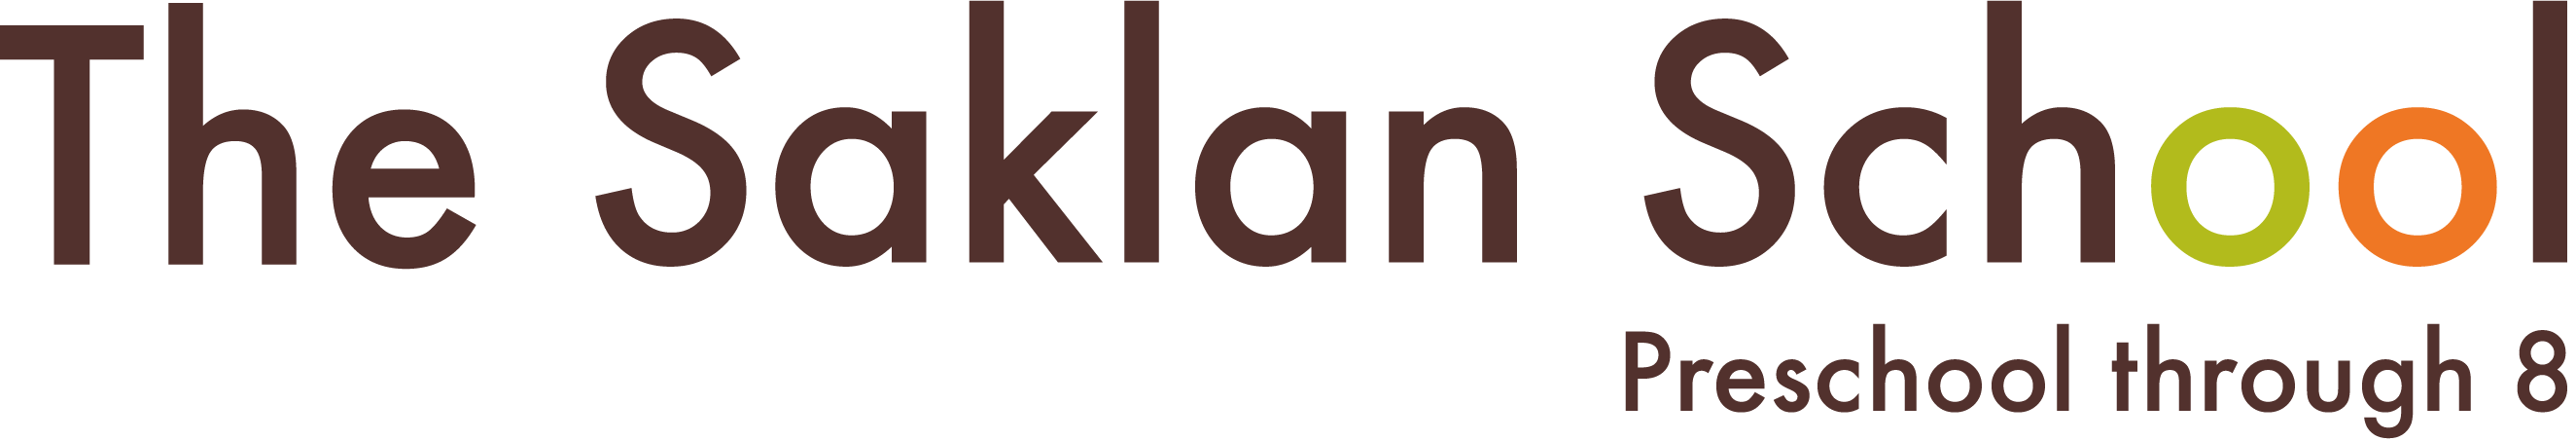 The Saklan School logo